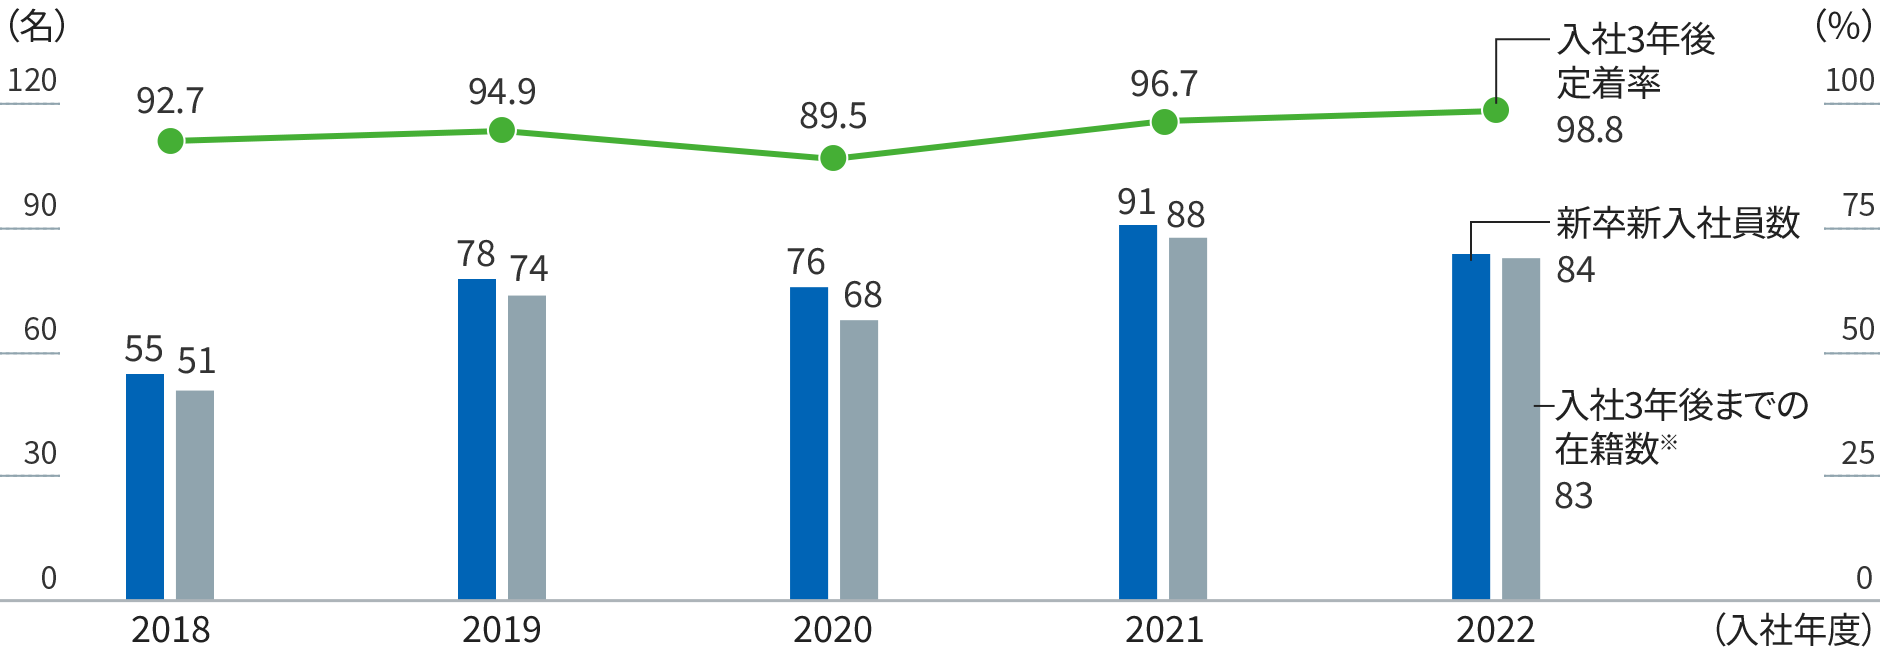 グラフ：年度別の新卒新入社員数、入社３年後までの在籍数を棒グラフで、入社３年後定着率を折れ線グラフで示す。